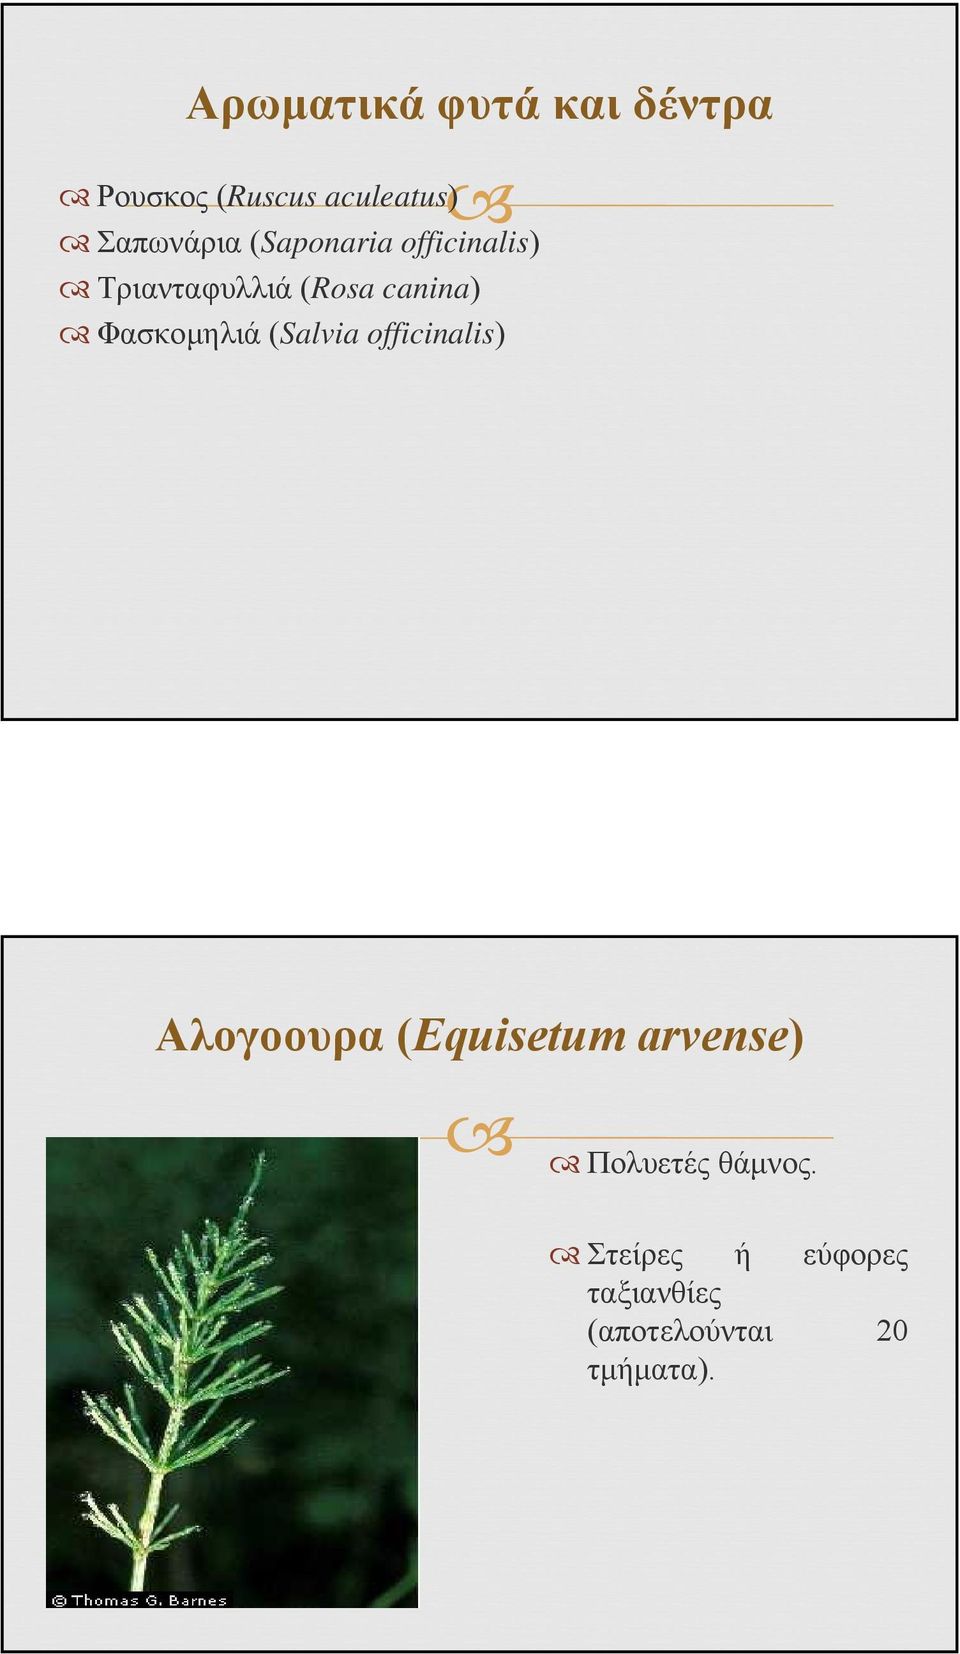 Φασκομηλιά (Salvia officinalis) Αλογοουρα (Equisetum arvense)